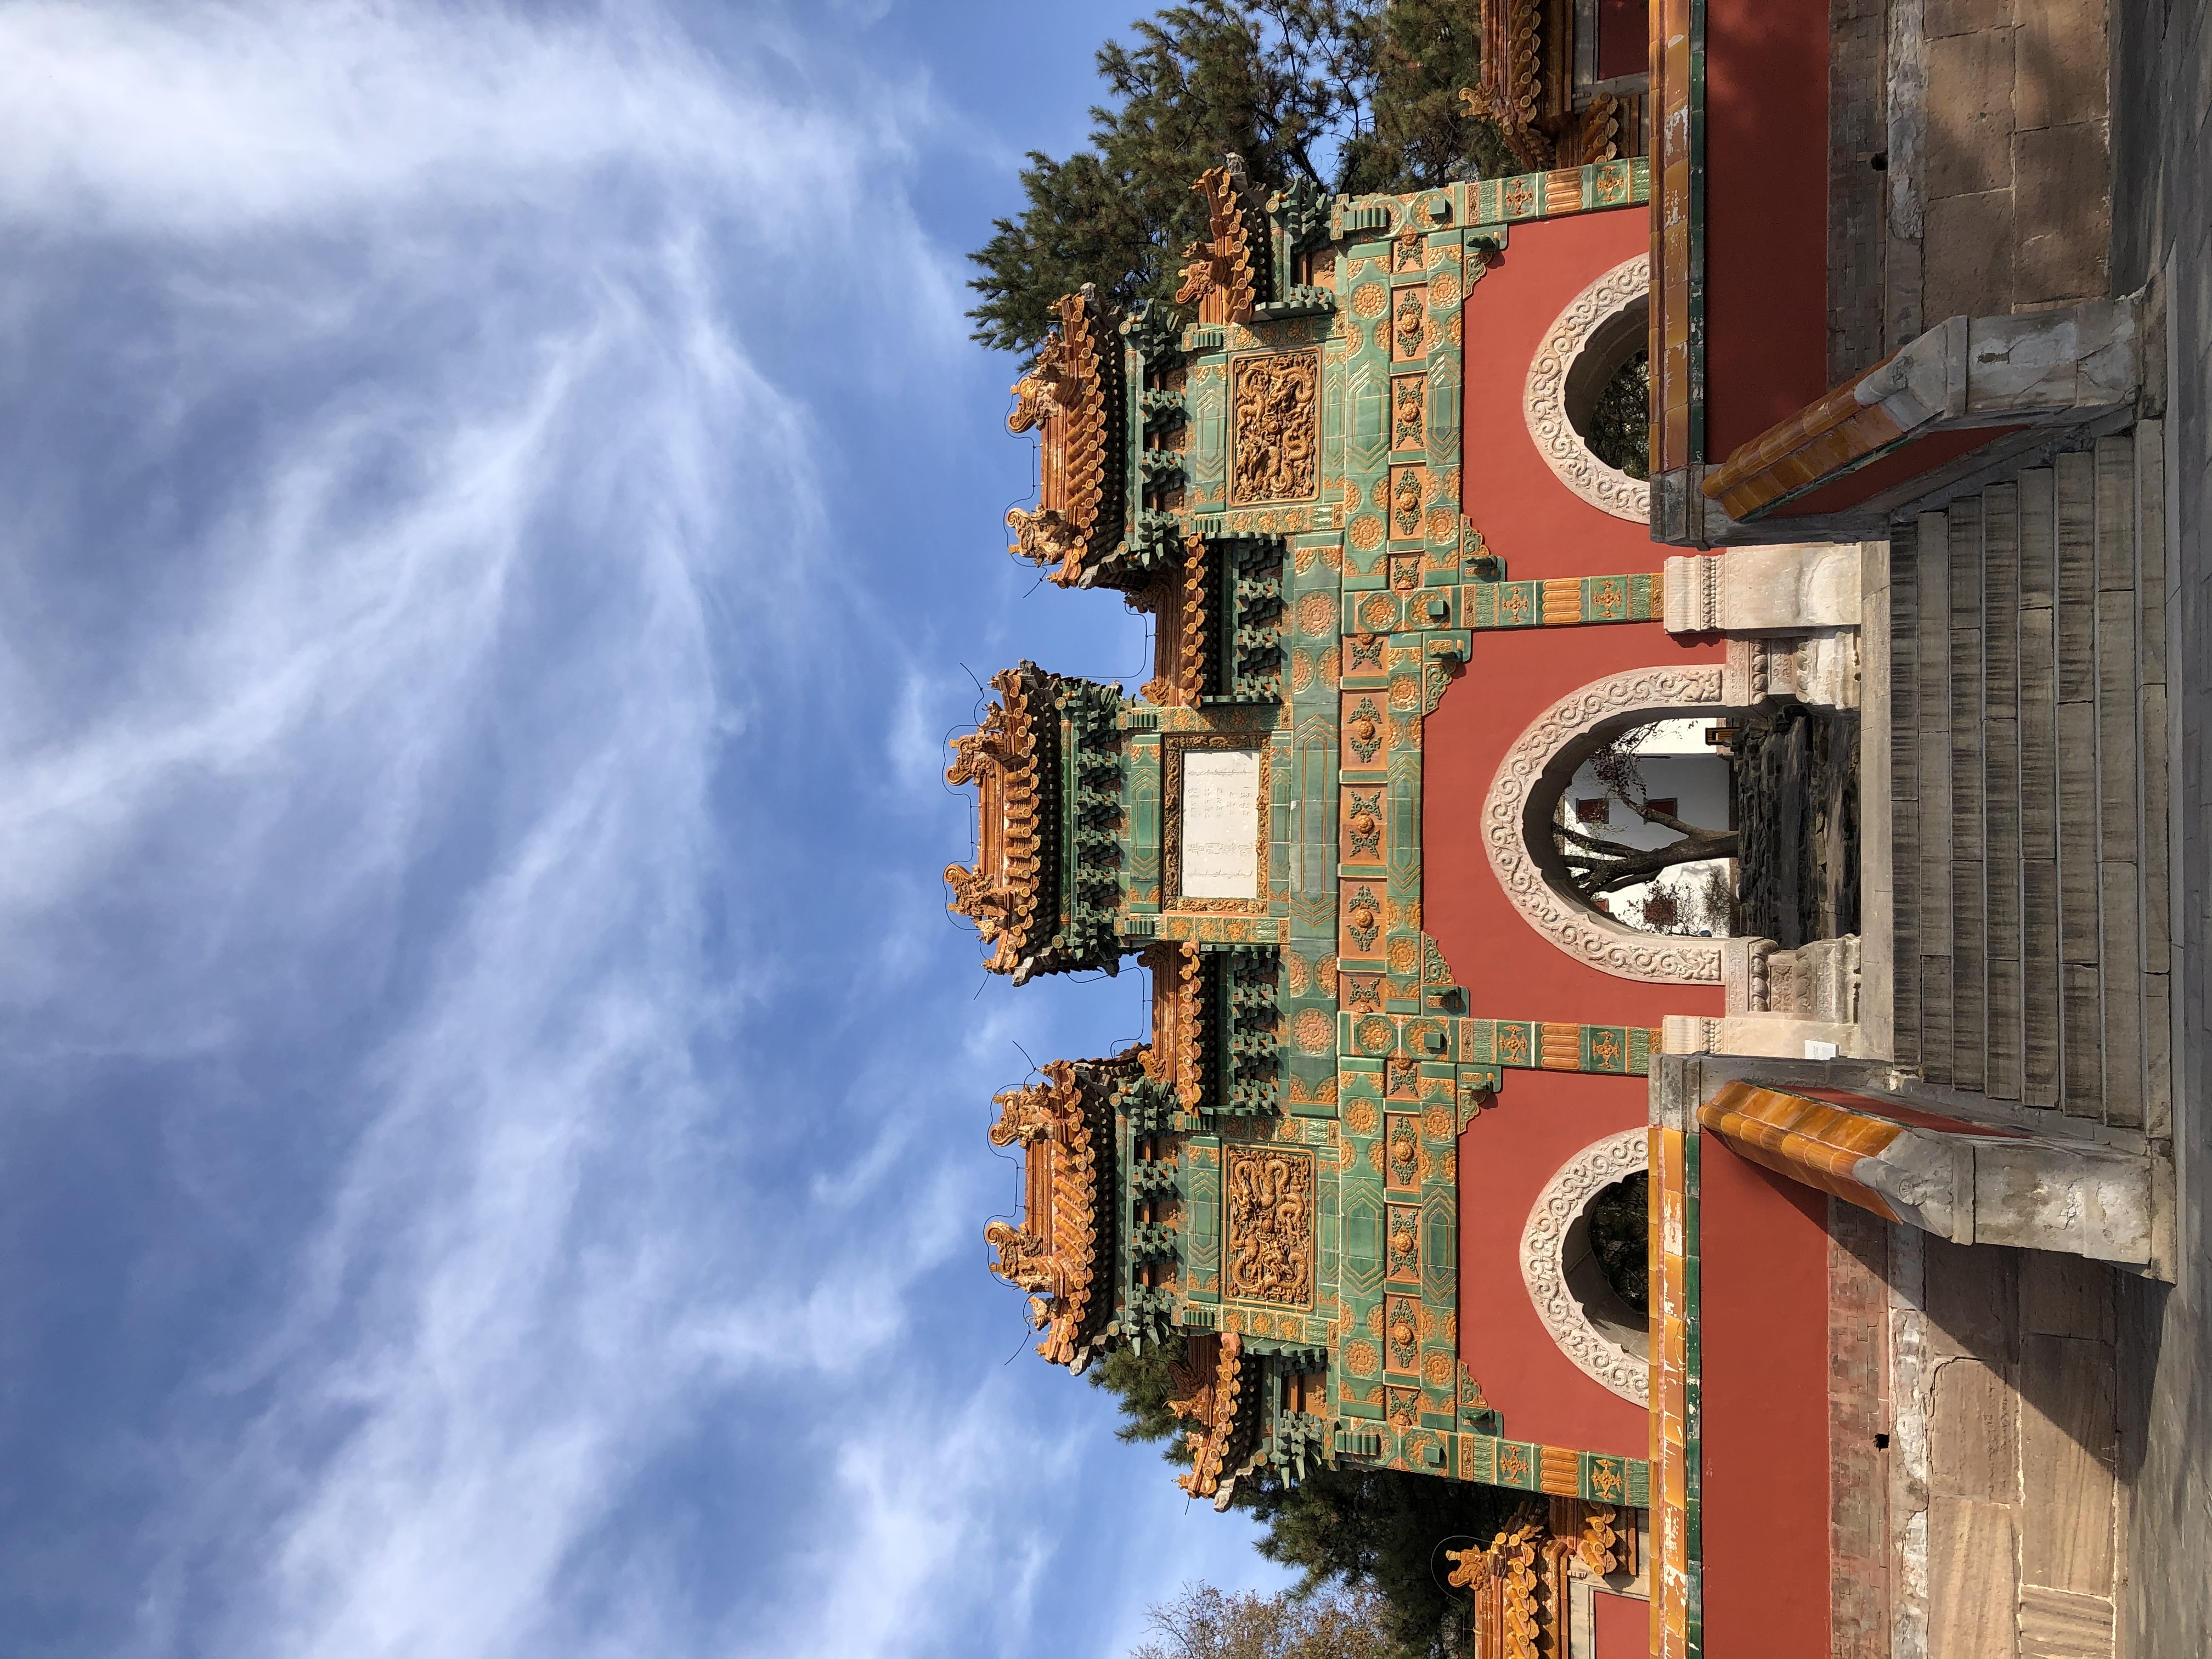 Visiter Chengde et les temples 